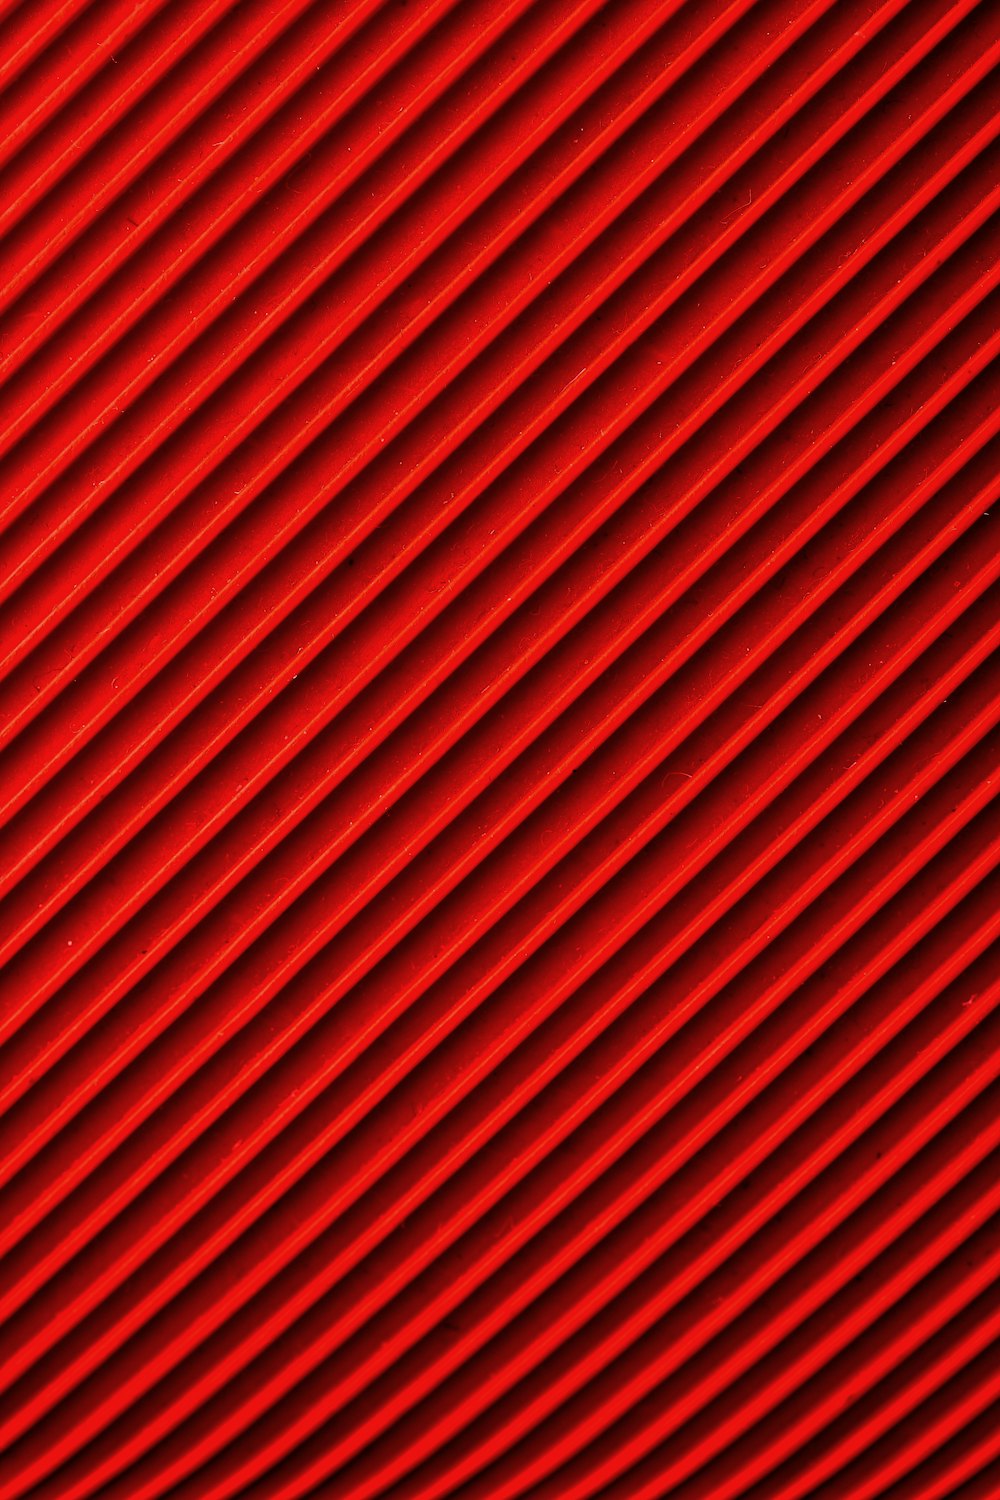 Hình nền vải đỏ trên Unsplash sẽ cho bạn một trải nghiệm đẹp mắt về cảm giác, về màu sắc và về kiểu dáng của hình ảnh. Đây là lựa chọn hoàn hảo nếu bạn muốn thêm một chút màu sắc nổi bật cho thiết kế của mình. Hãy duyệt qua những bức ảnh này để tìm thấy bức hình nền vải đỏ hoàn hảo cho mình!